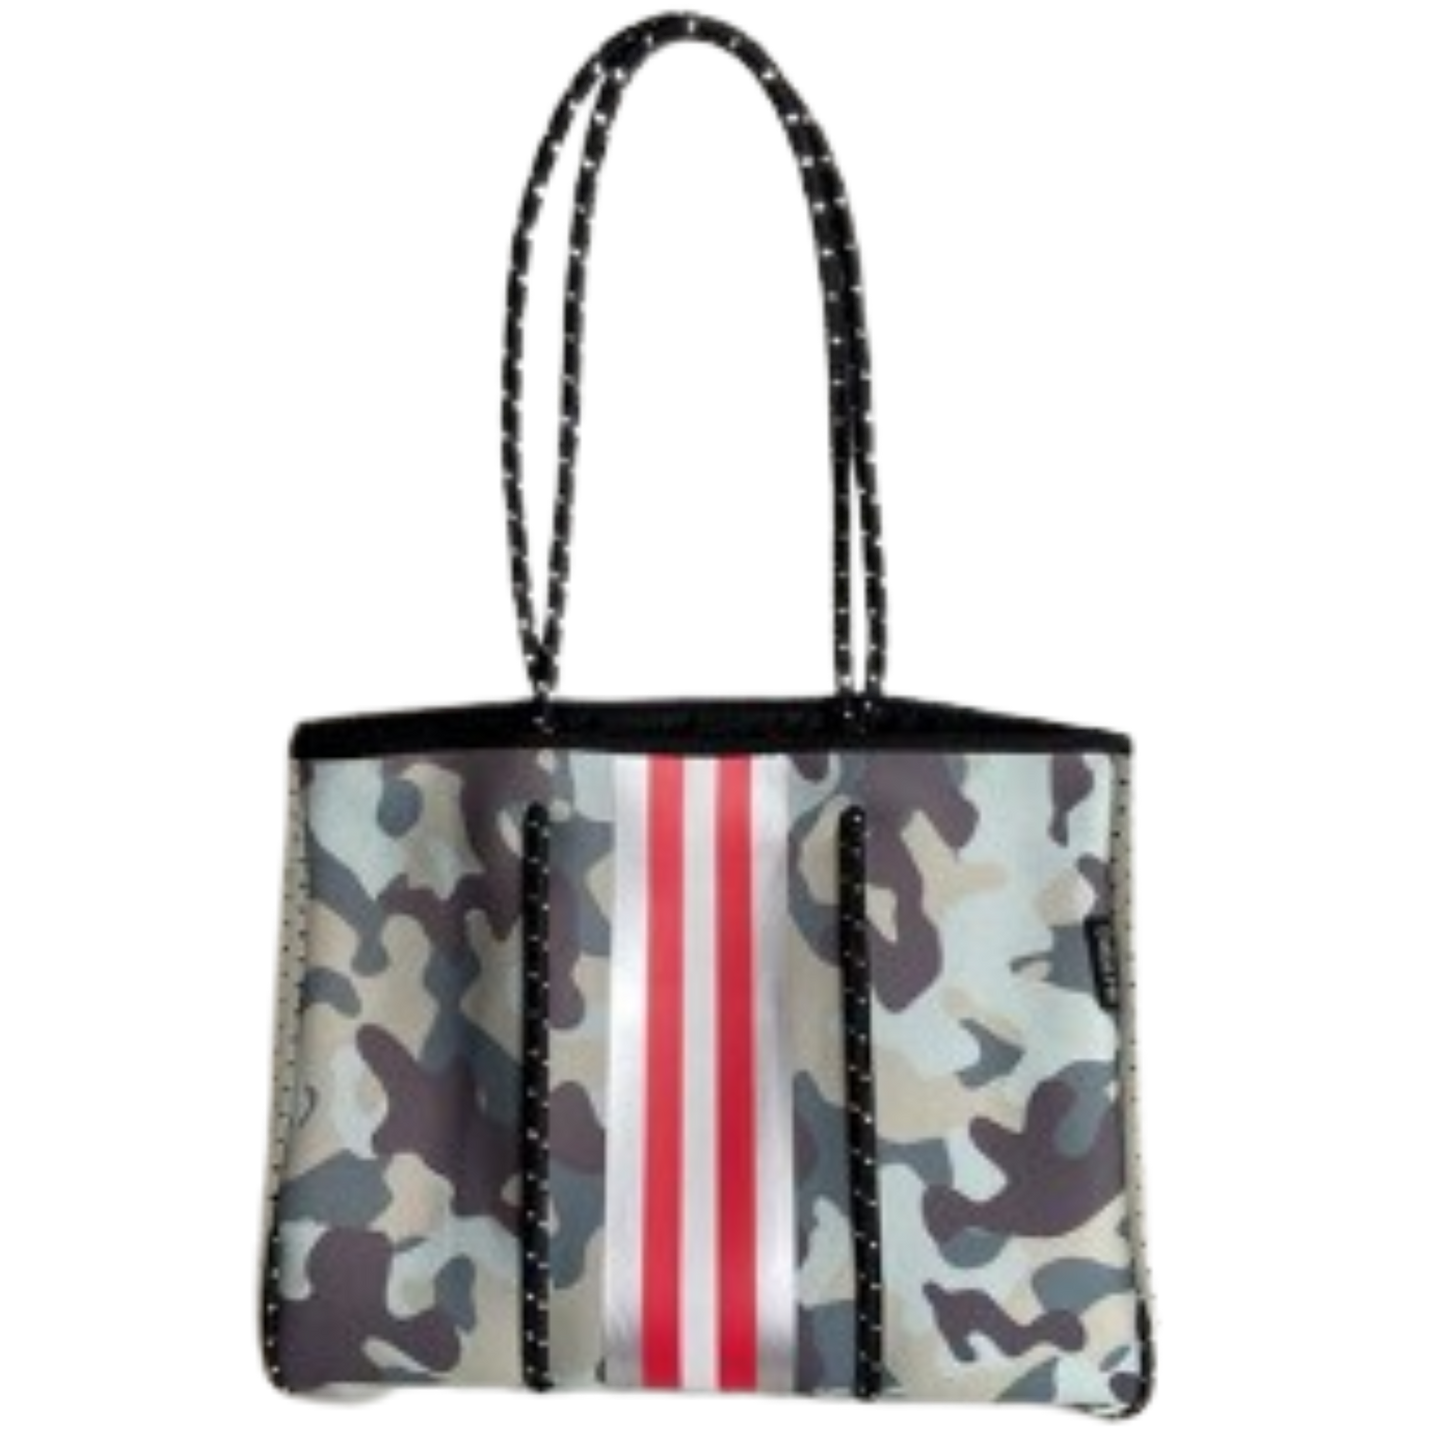 Neoprene Tote Bag Camo Sea Green & Gray by Dallas Hill Design